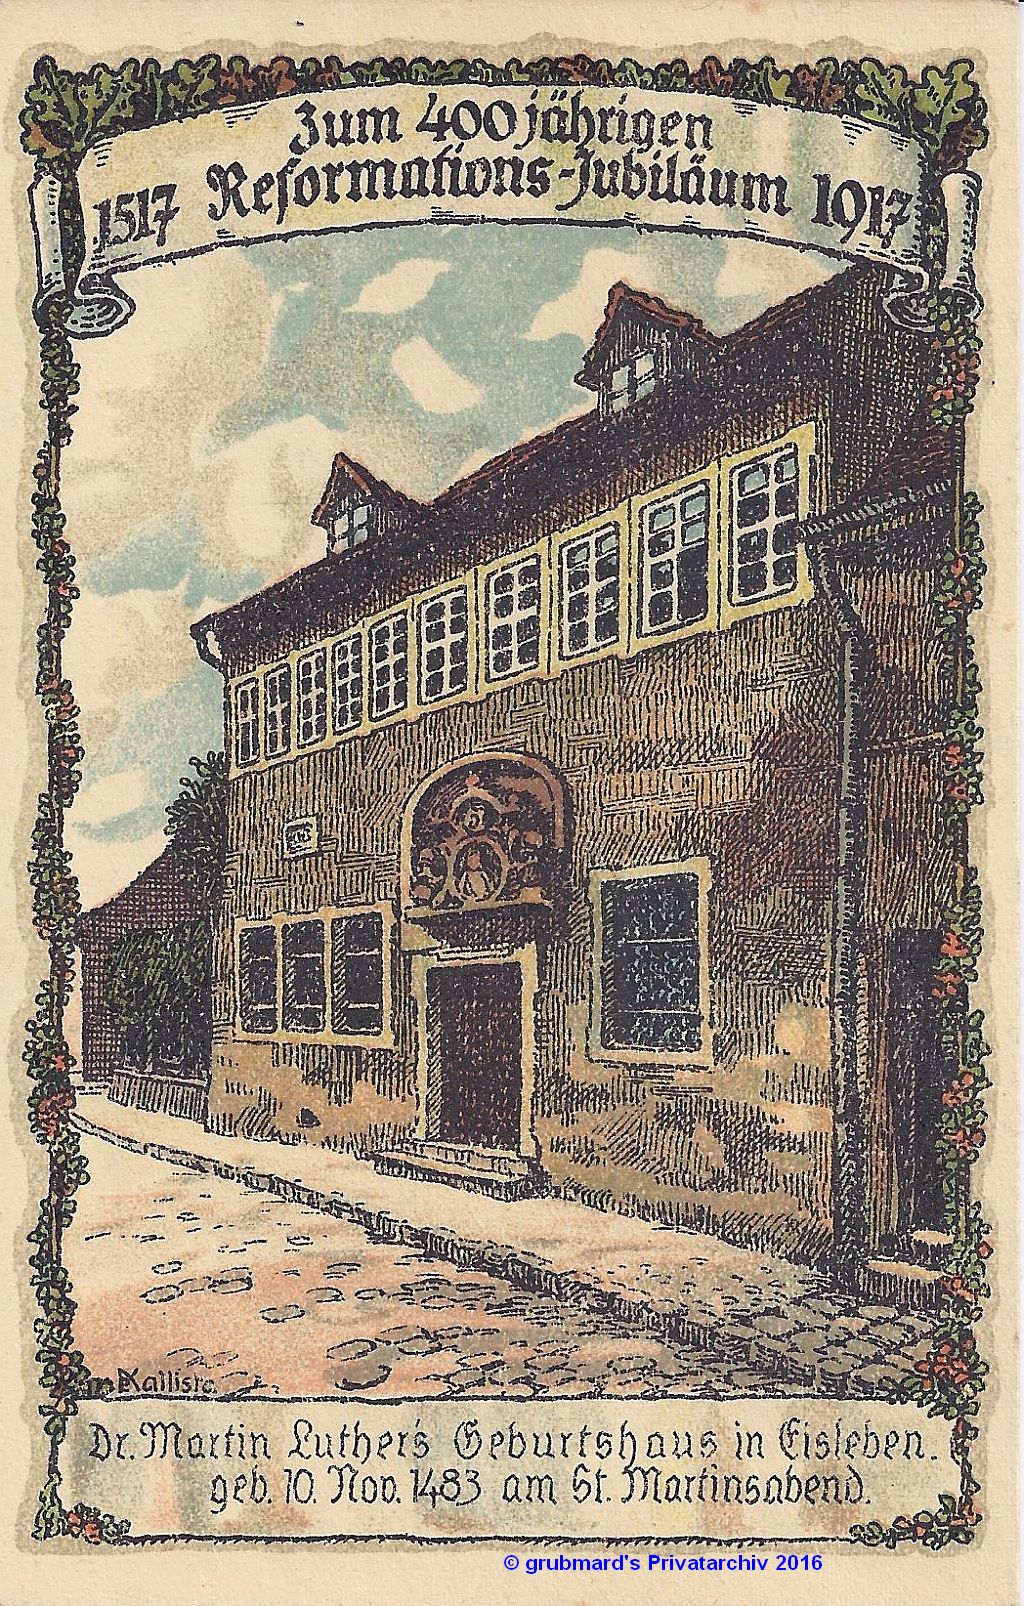 Postkarte von 1917 (aus meiner Sammlung)